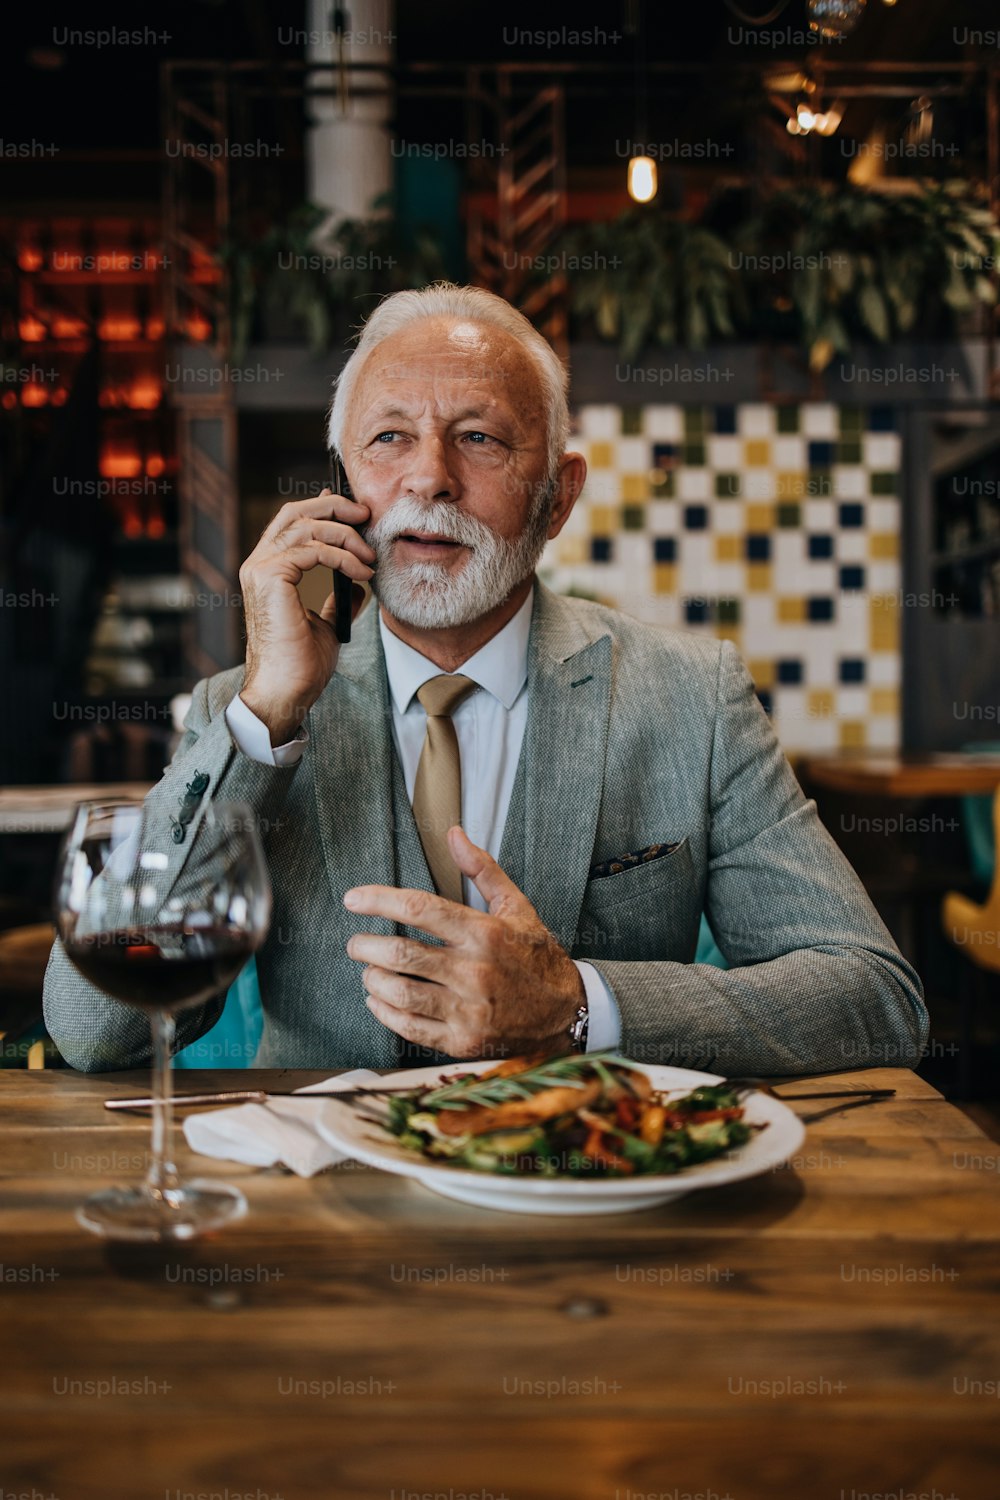 Uomo d'affari anziano felice e bello seduto nel ristorante e in attesa del pranzo. Sta usando lo smartphone e sta parlando con qualcuno. Concetto di stile di vita per anziani d'affari.